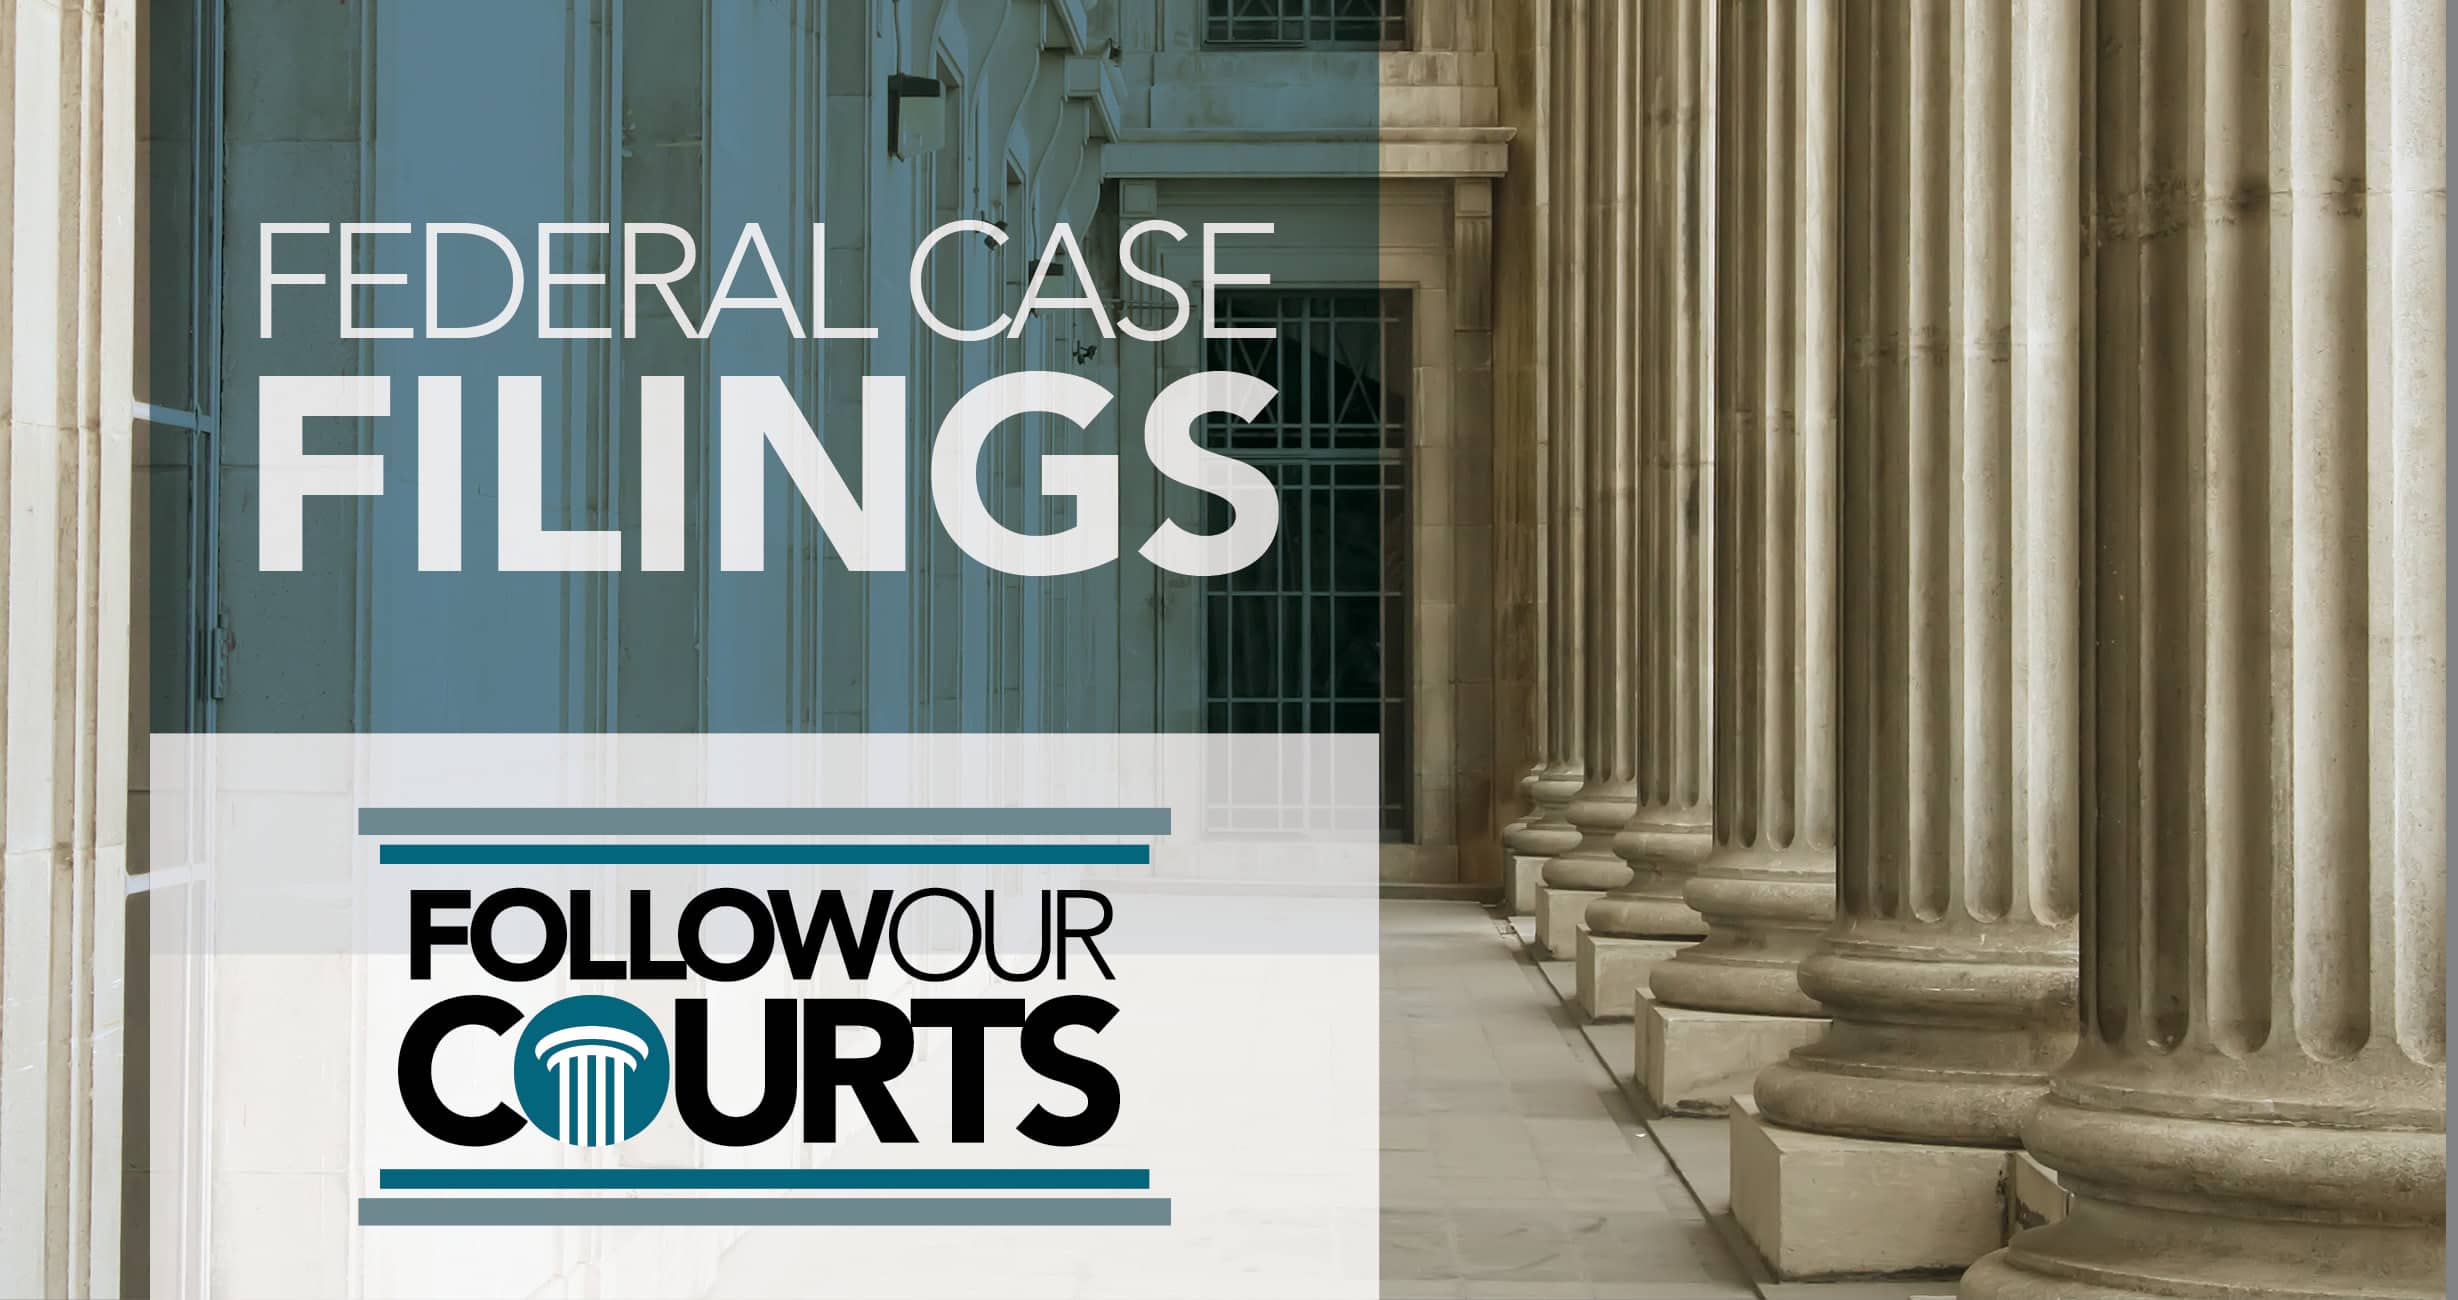 Federal case filings April 12